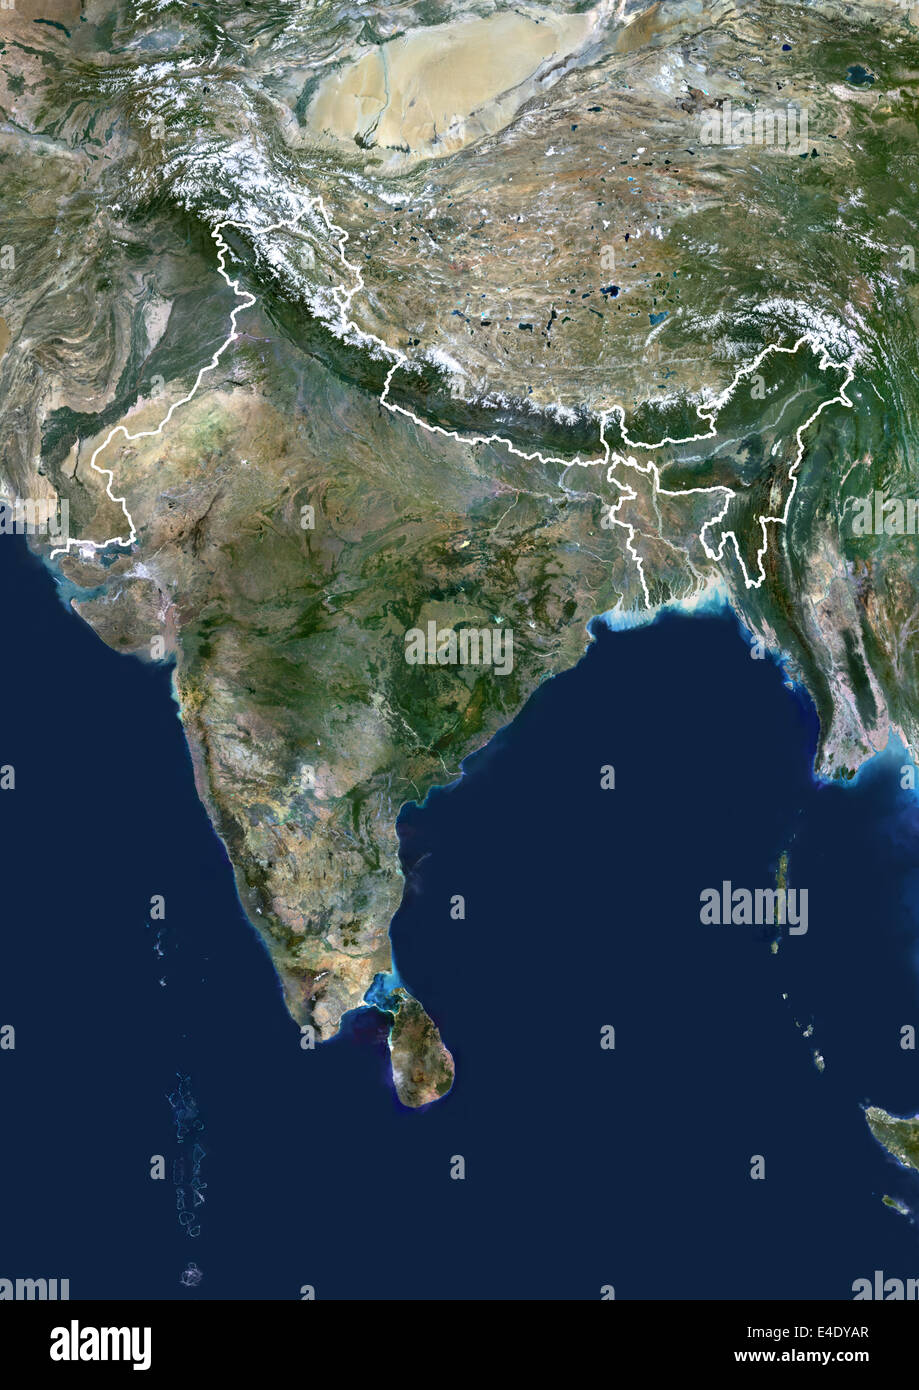 Indien, Echtfarben-Satellitenbild mit Rand. Indien, Echtfarben-Satellitenbild mit Rand. Dieses Bild zeigt die indische subc Stockfoto